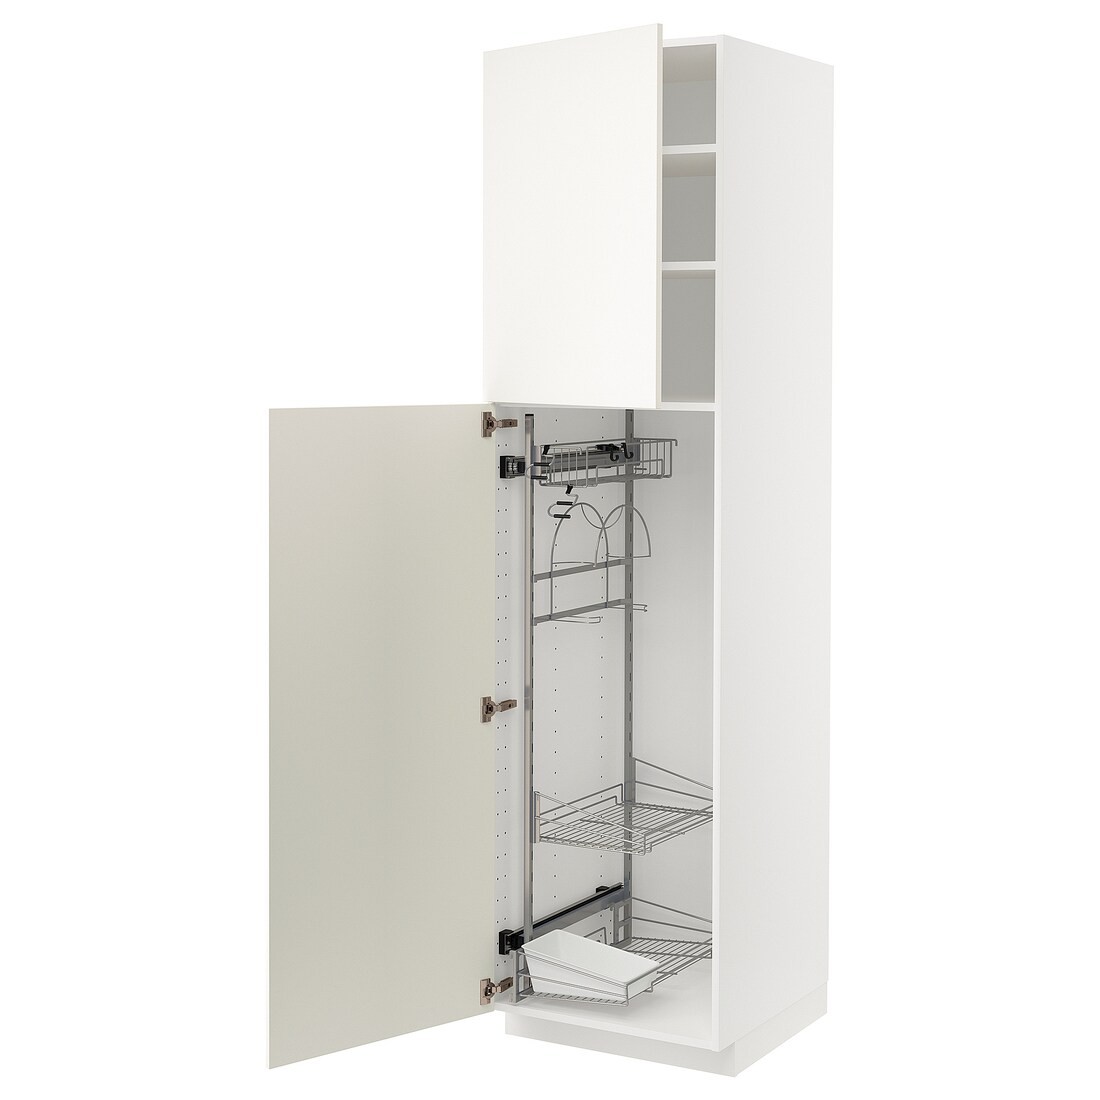 IKEA METOD МЕТОД Висока шафа з відділенням для аксесуарів для прибирання, білий / Veddinge білий, 60x60x220 см 89454912 894.549.12